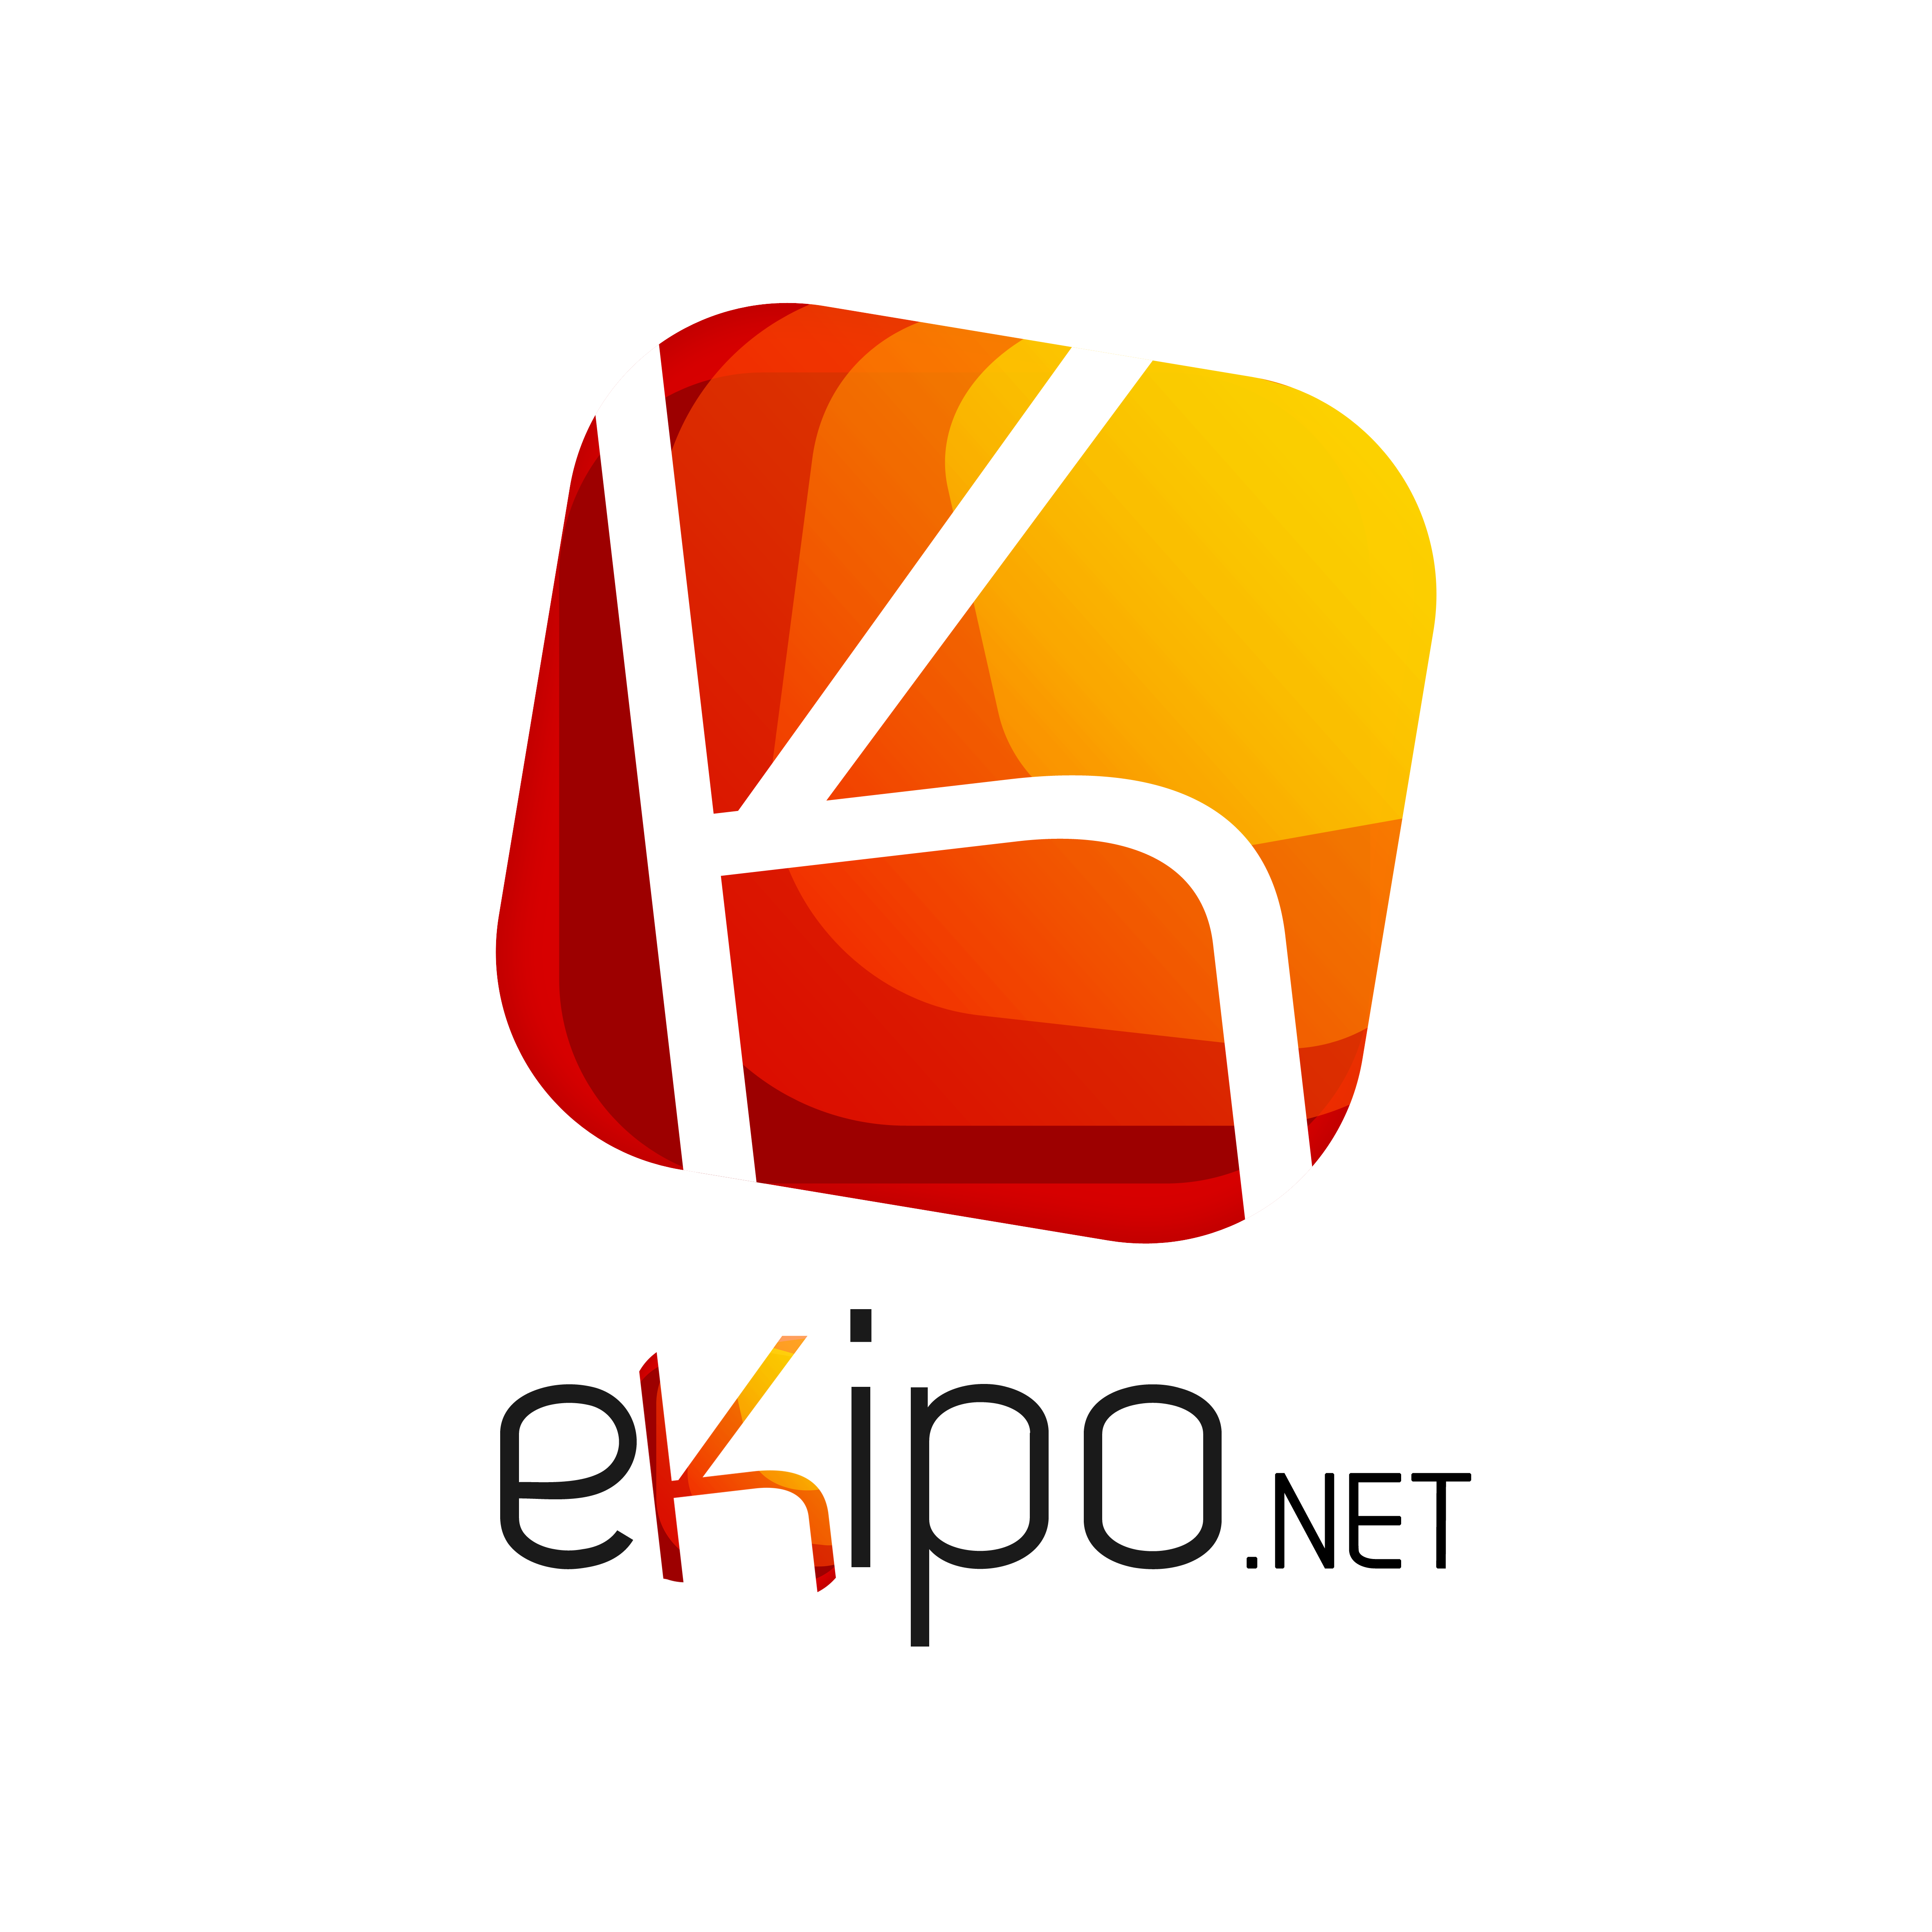 Ekipo.net Servicios IT para empresa